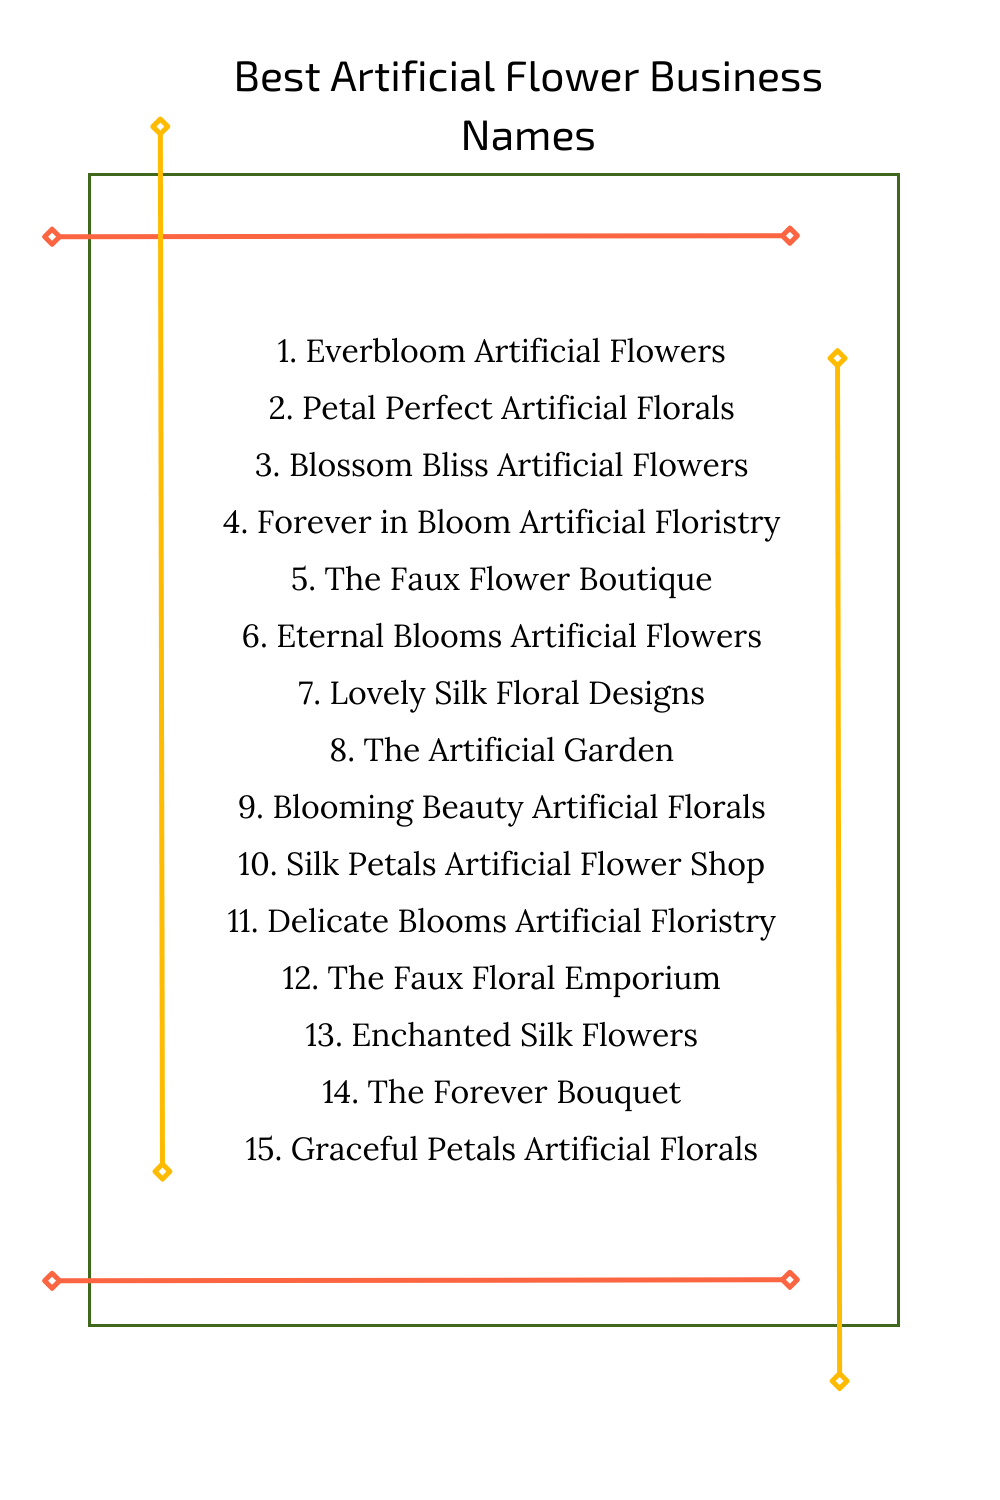 Best Artificial Flower Business Names